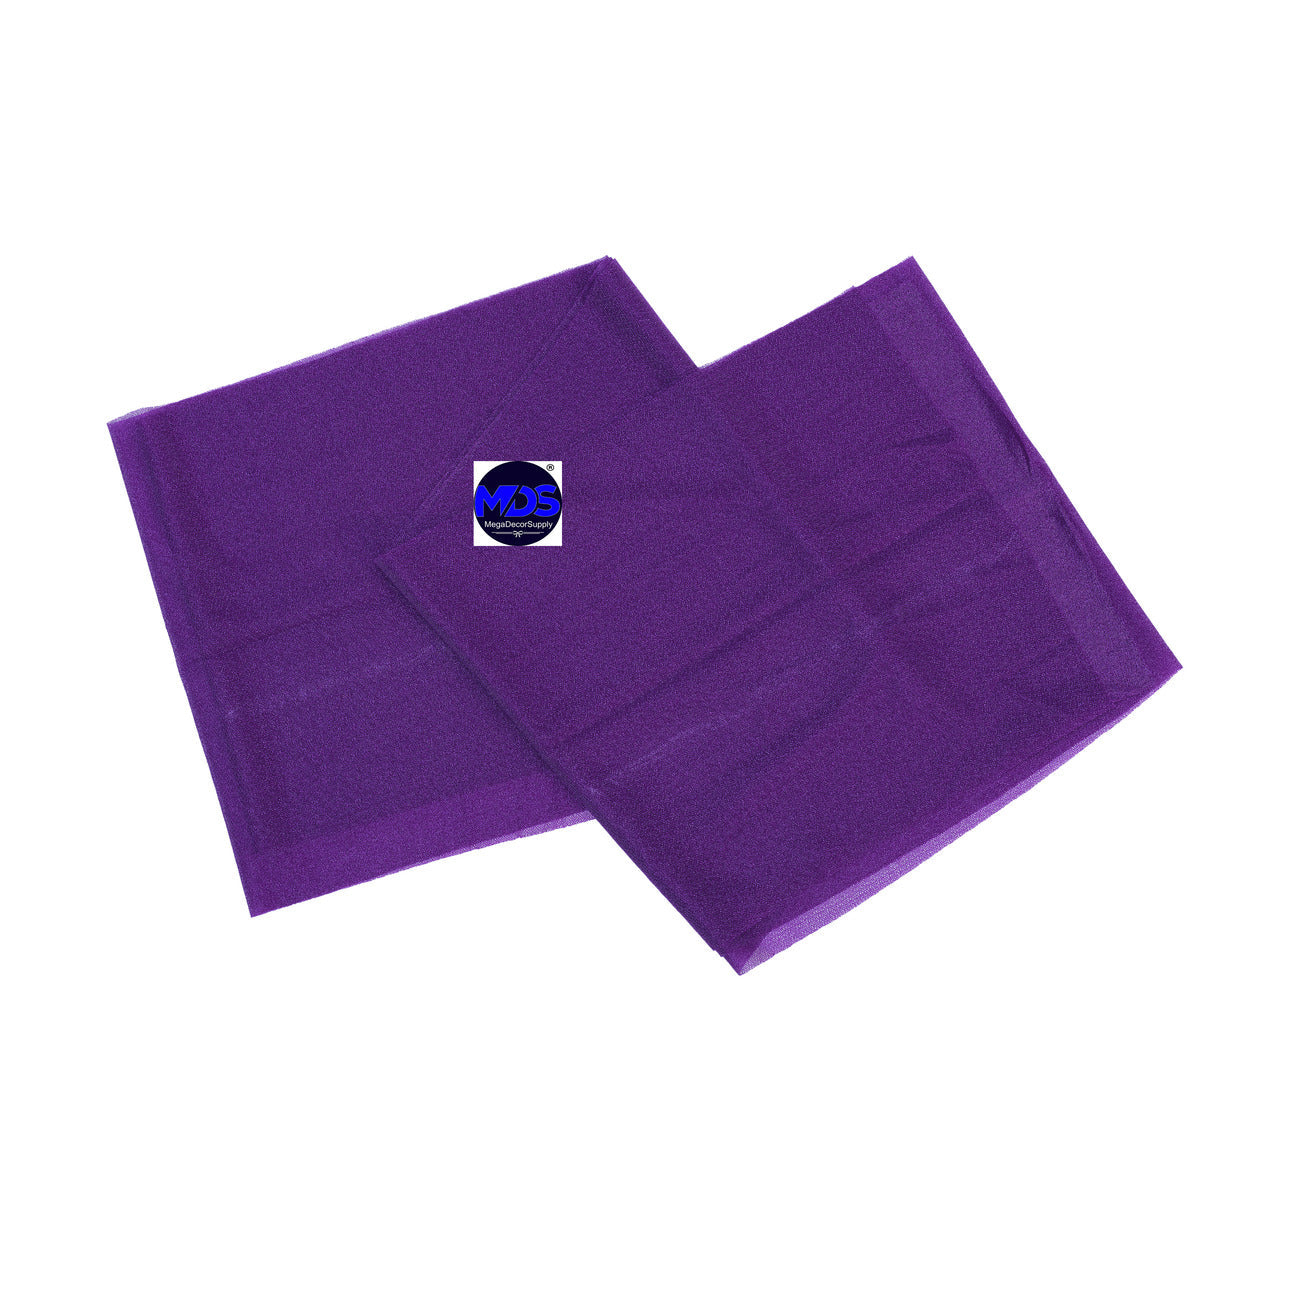 Purple,8acadc90-8ebd-4e69-9484-59226bffdeea